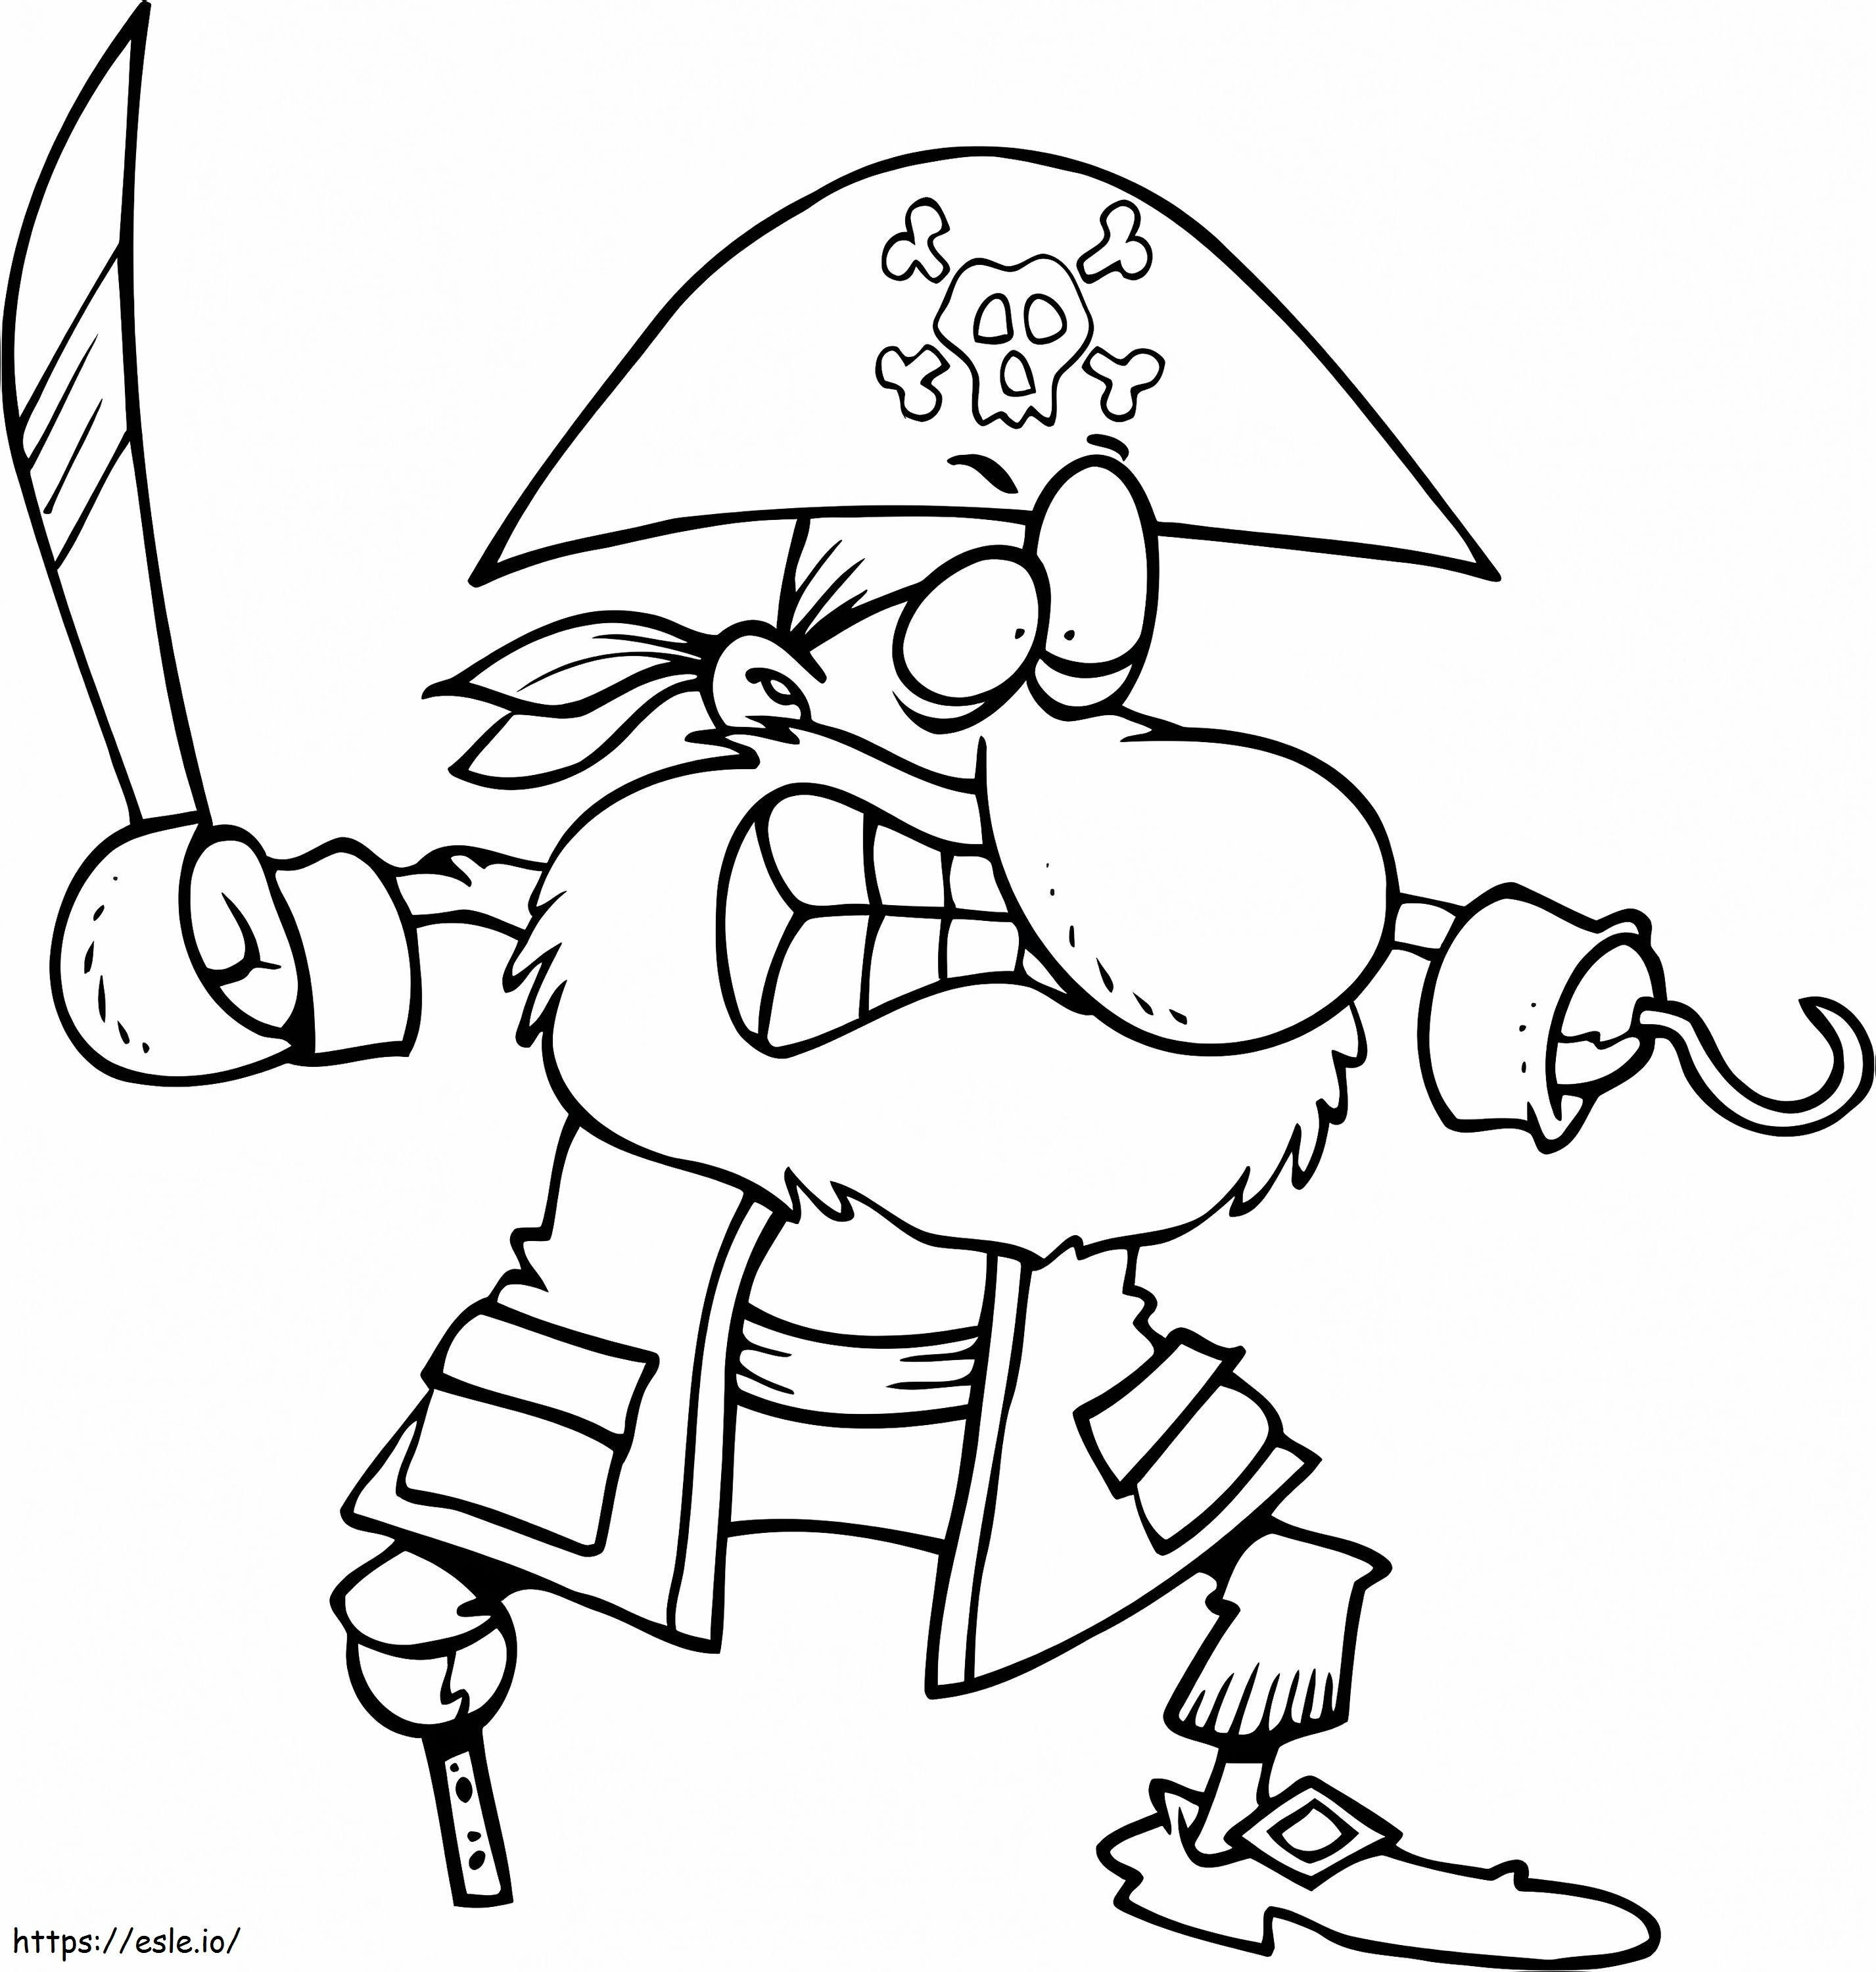 Styl kreskówki pirata kolorowanka